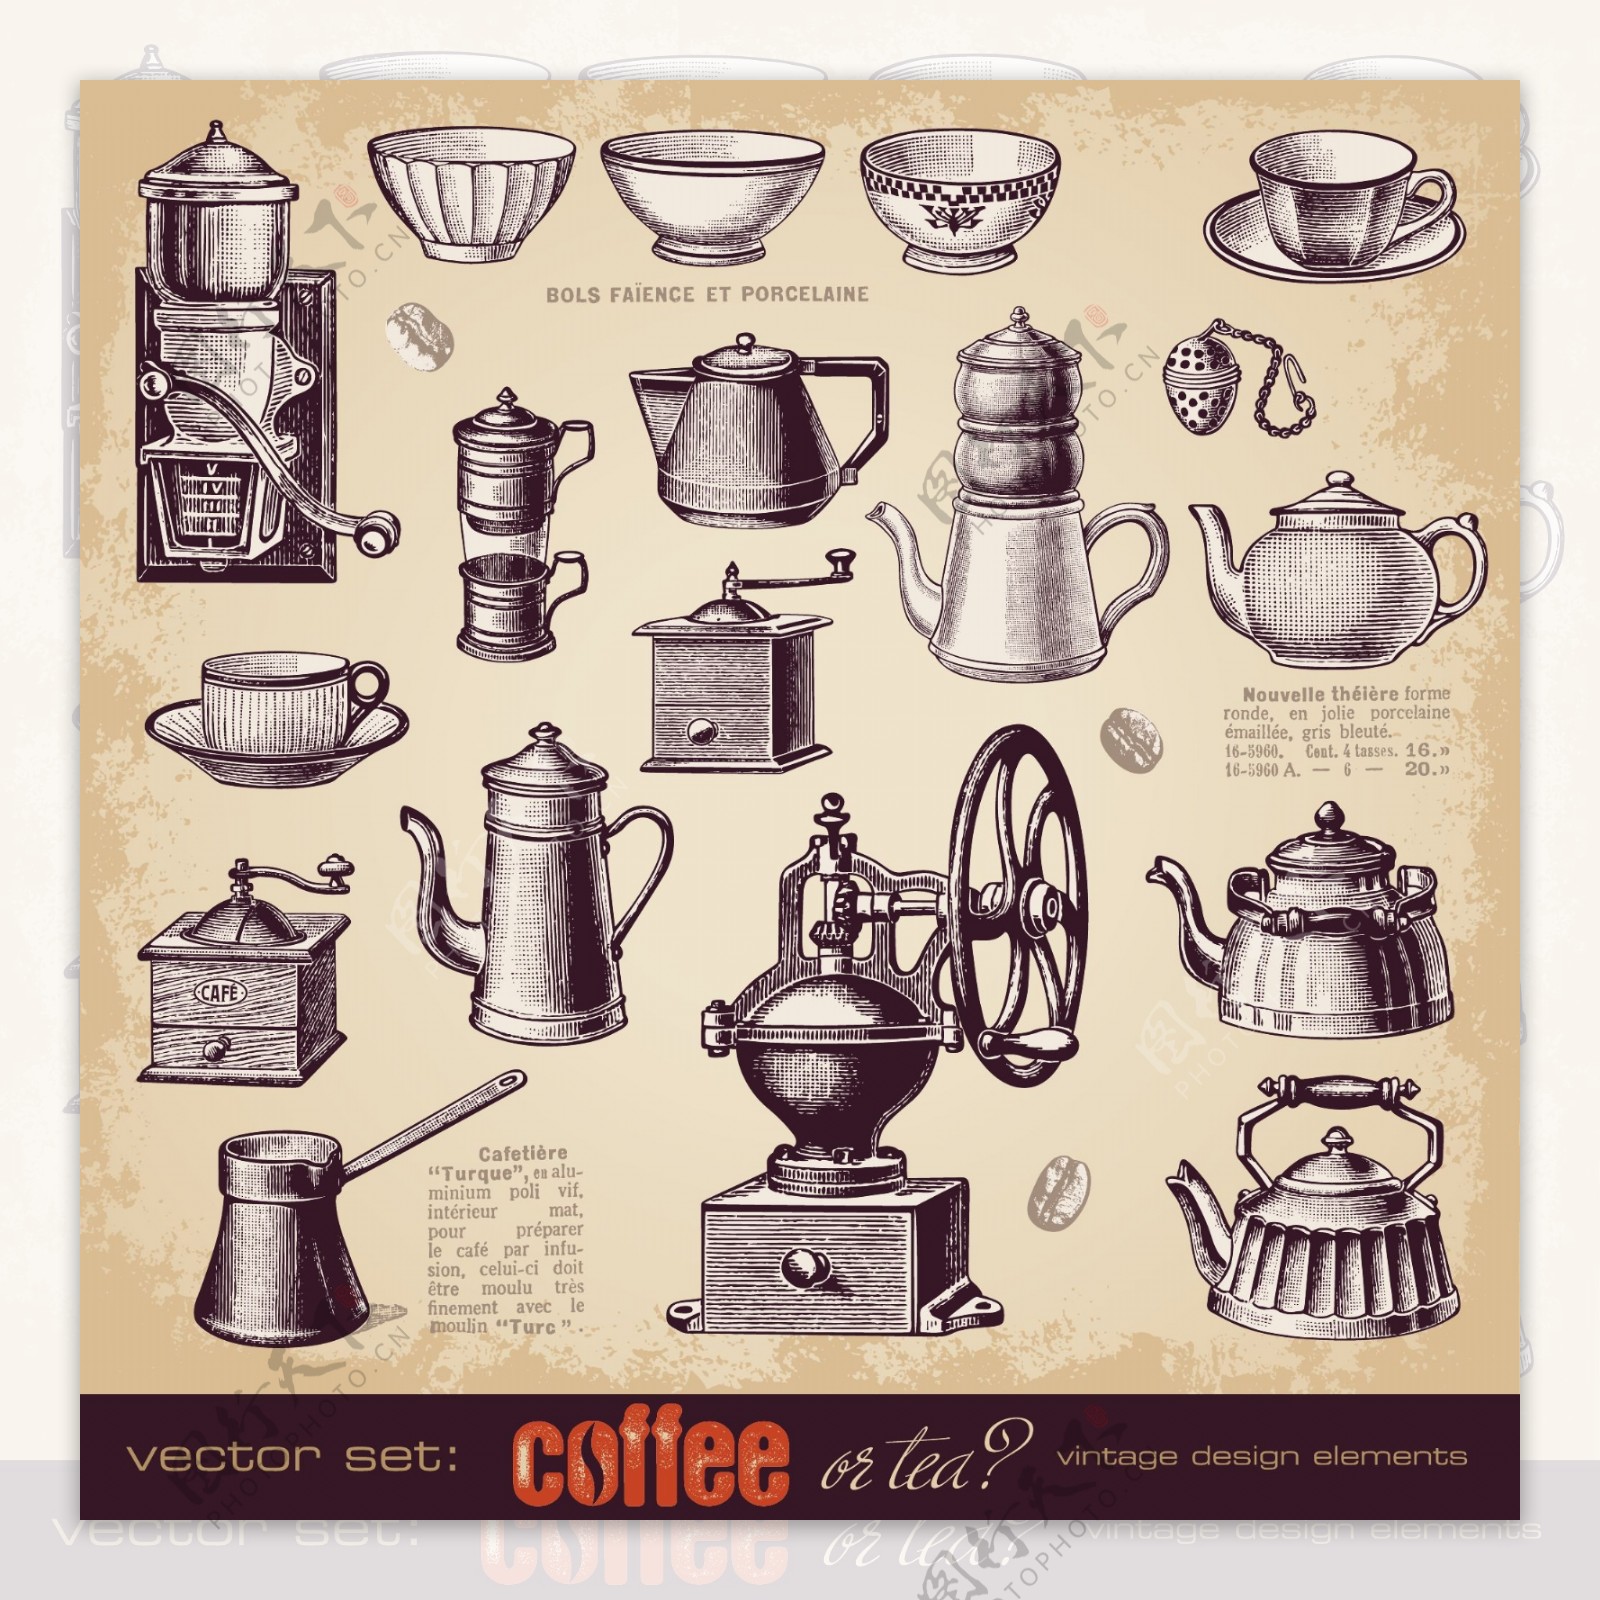 煮咖啡工具用品图片